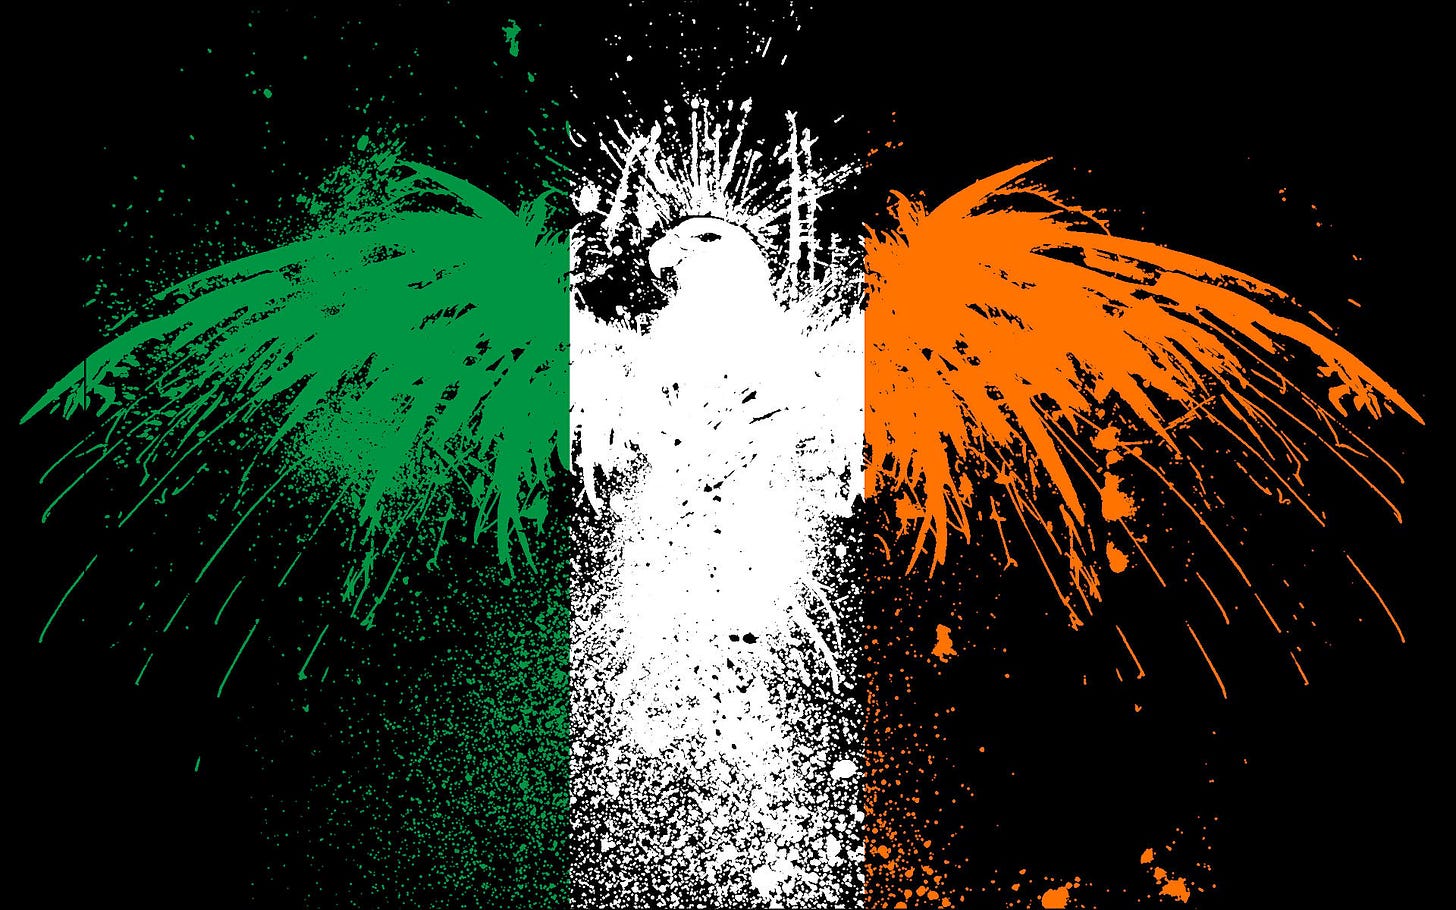 [50+] Irish Flag Wallpaper for iPhone - WallpaperSafari